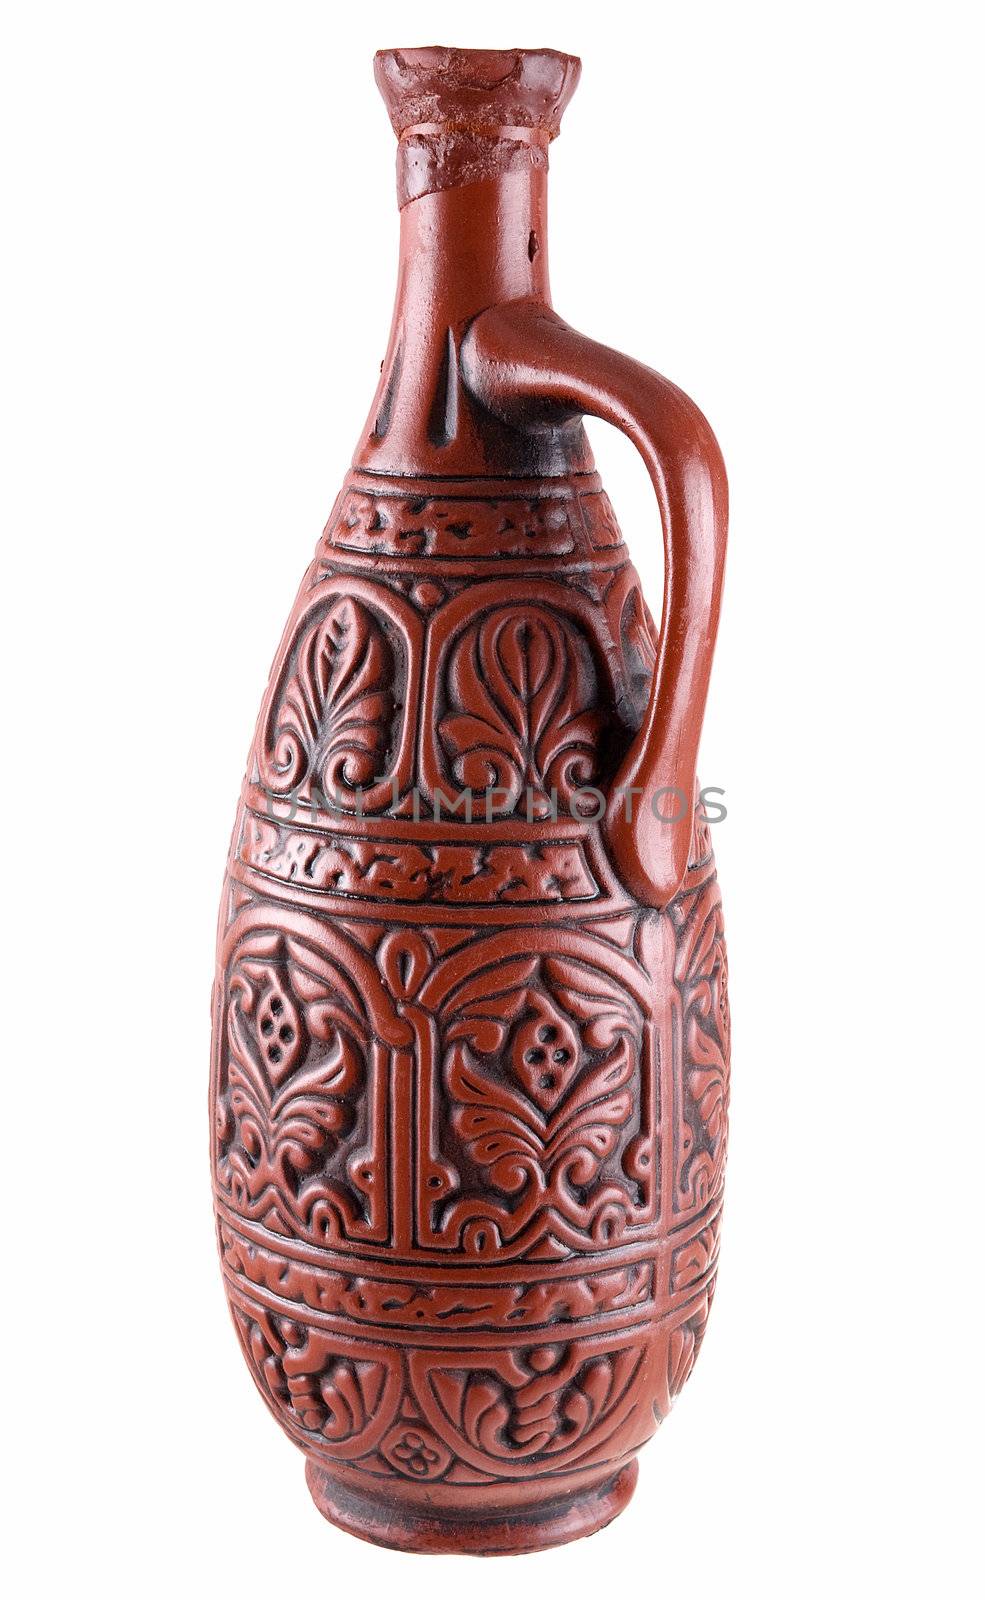 Dark brown clay jug on a white background